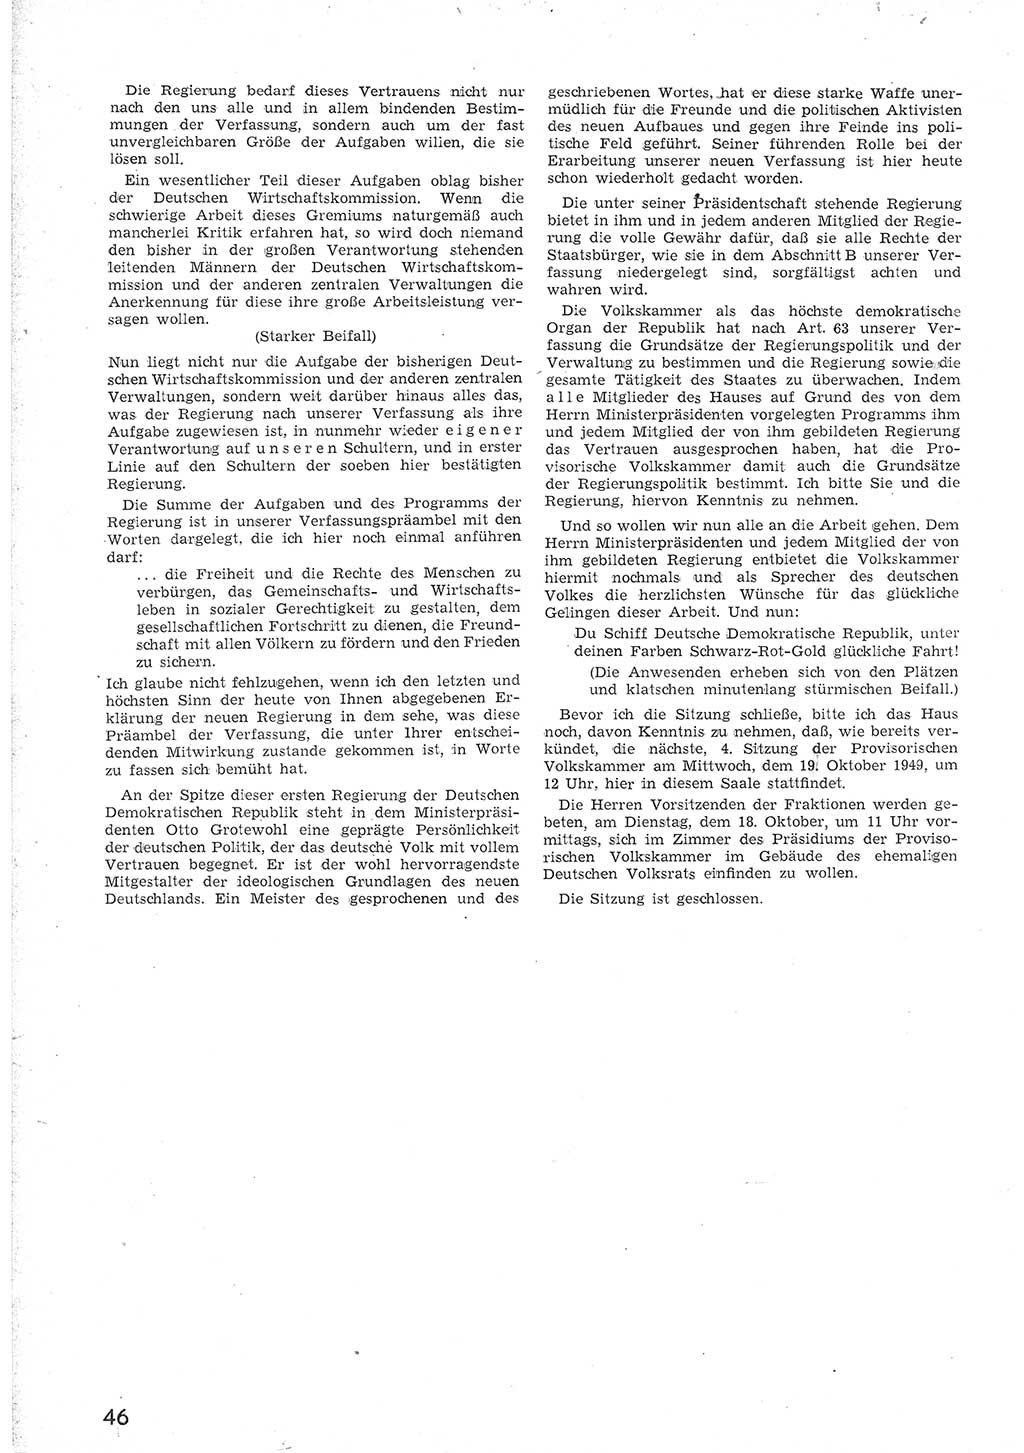 Provisorische Volkskammer (VK) der Deutschen Demokratischen Republik (DDR) 1949-1950, Dokument 58 (Prov. VK DDR 1949-1950, Dok. 58)